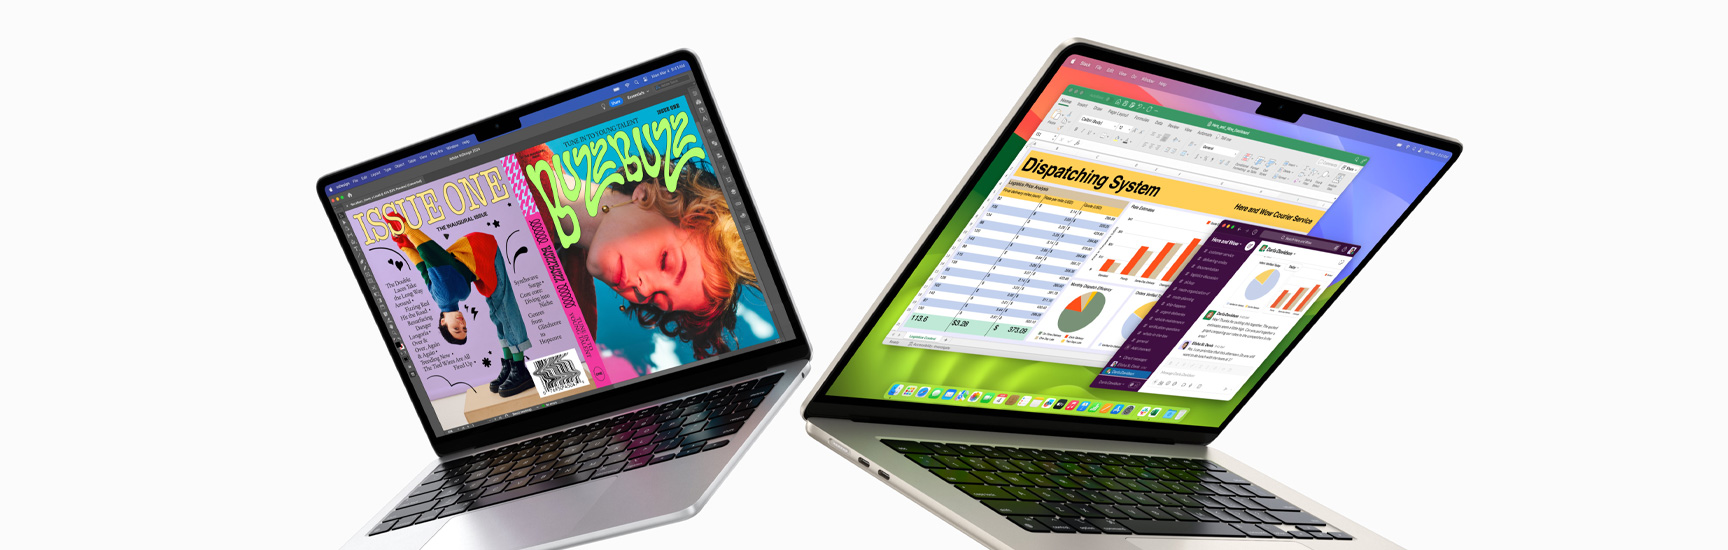 MacBook Air de 13 inchi parțial deschis pe partea stângă și MacBook Air de 15 inchi parțial deschis pe partea dreaptă. Ecranul de 13 inchi afișează o copertă zine plină de culoare, creată cu In Design. Ecranul de 15 inchi afișează Microsoft Excel și Slack.